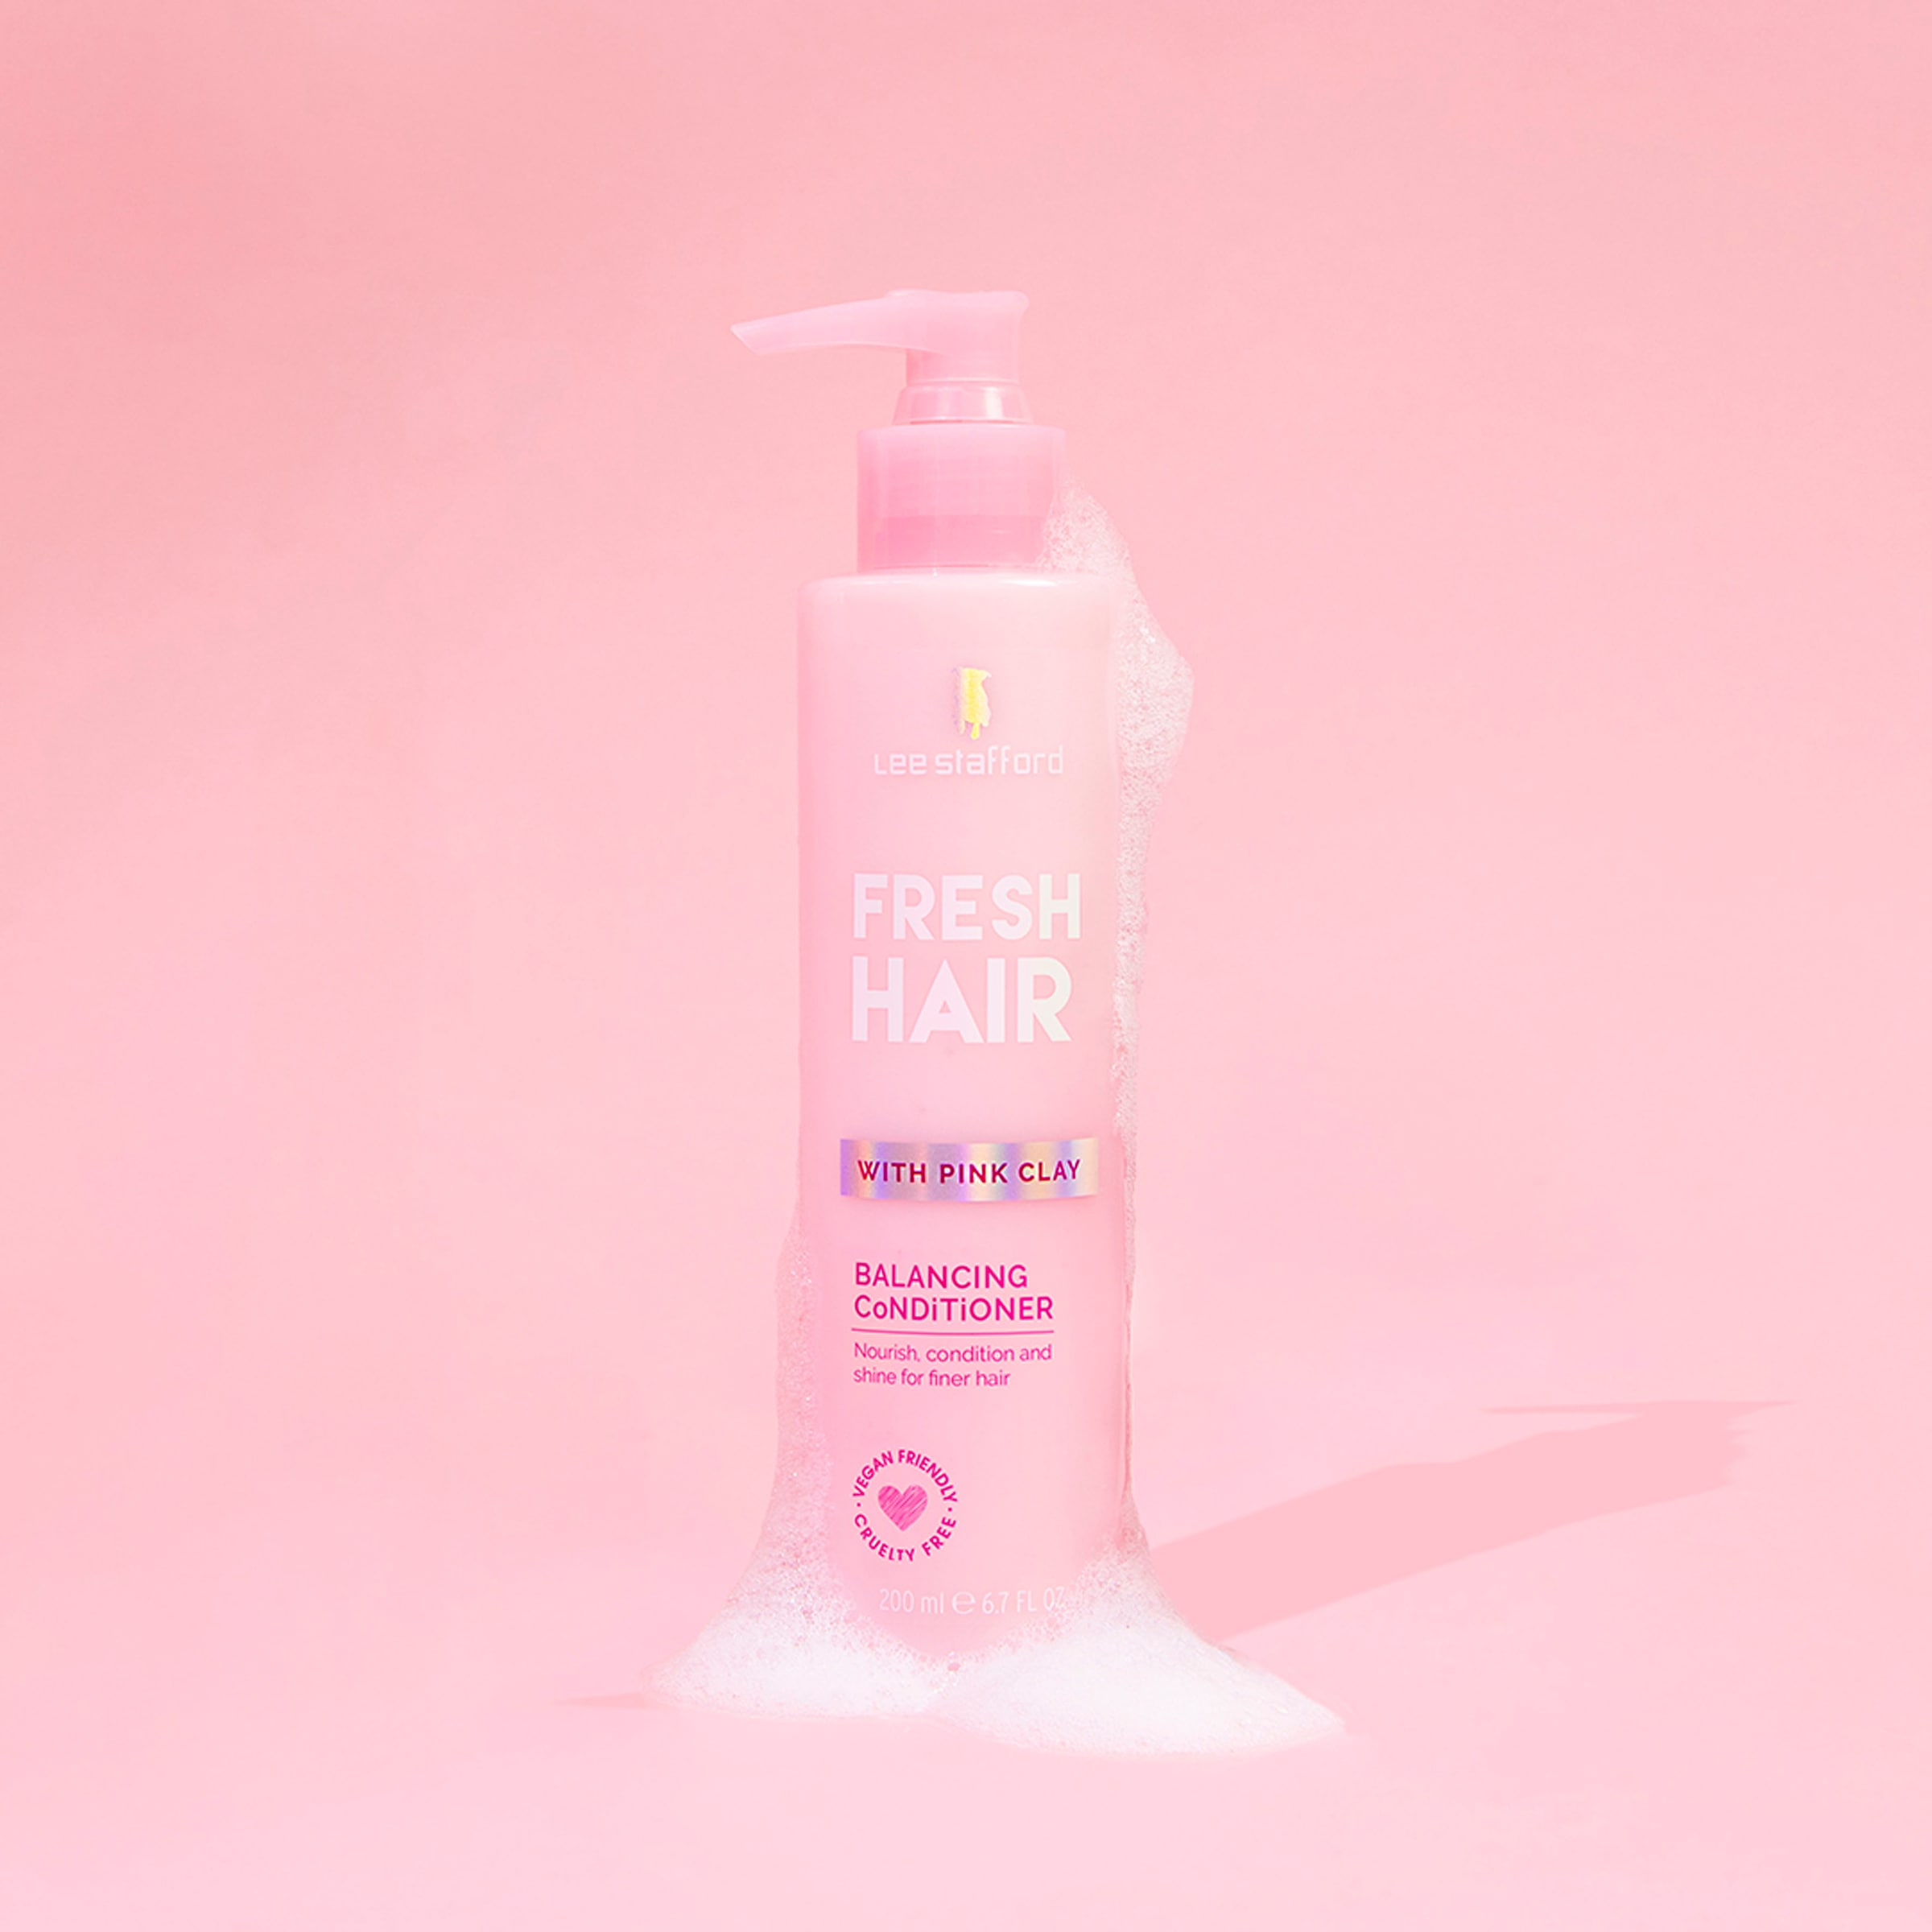 Lee Stafford Haarserum »Fresh Hair Conditioner« kaufen | UNIVERSAL